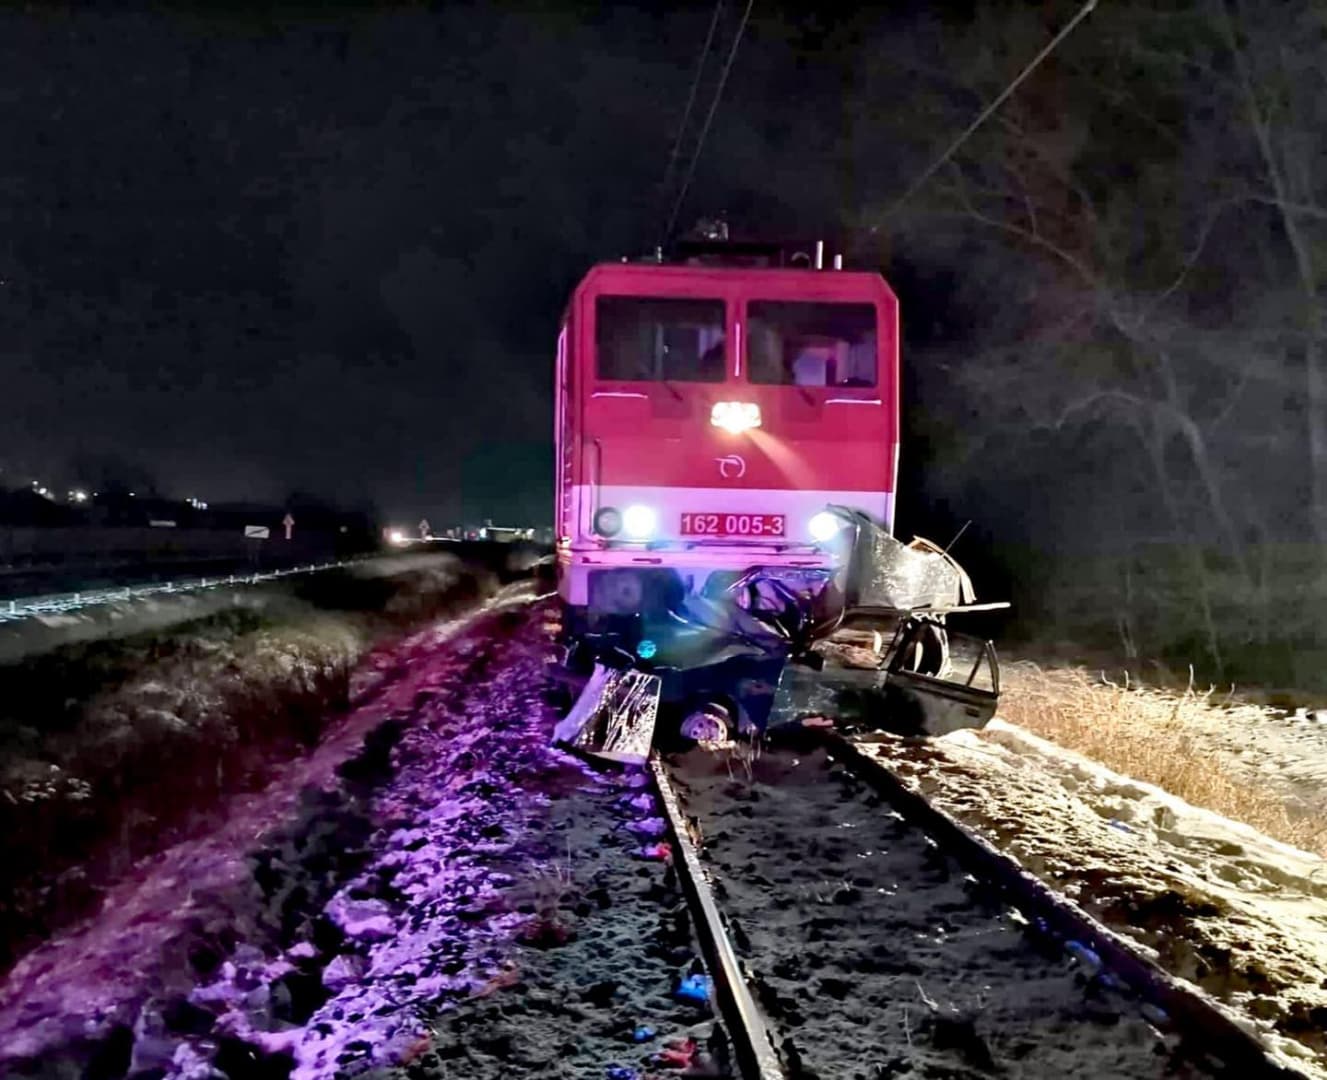 Telibe találta a személykocsit az érkező vonat, a 30 éves férfi a helyszínen meghalt